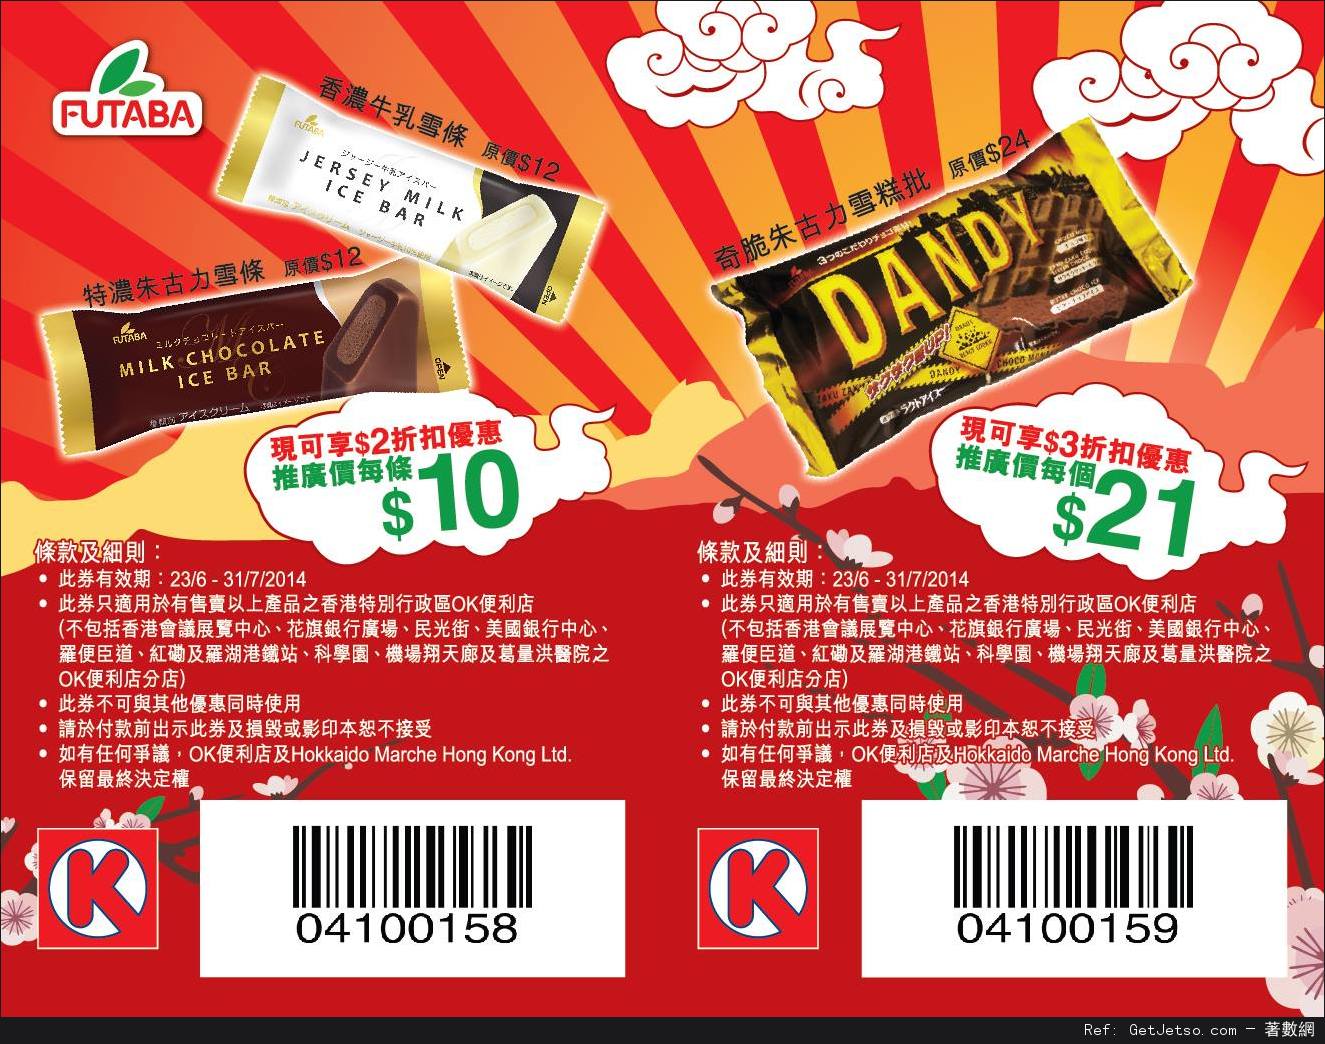 OK便利店日本Futaba系列雪糕現金折扣優惠券(至14年7月31日)圖片2